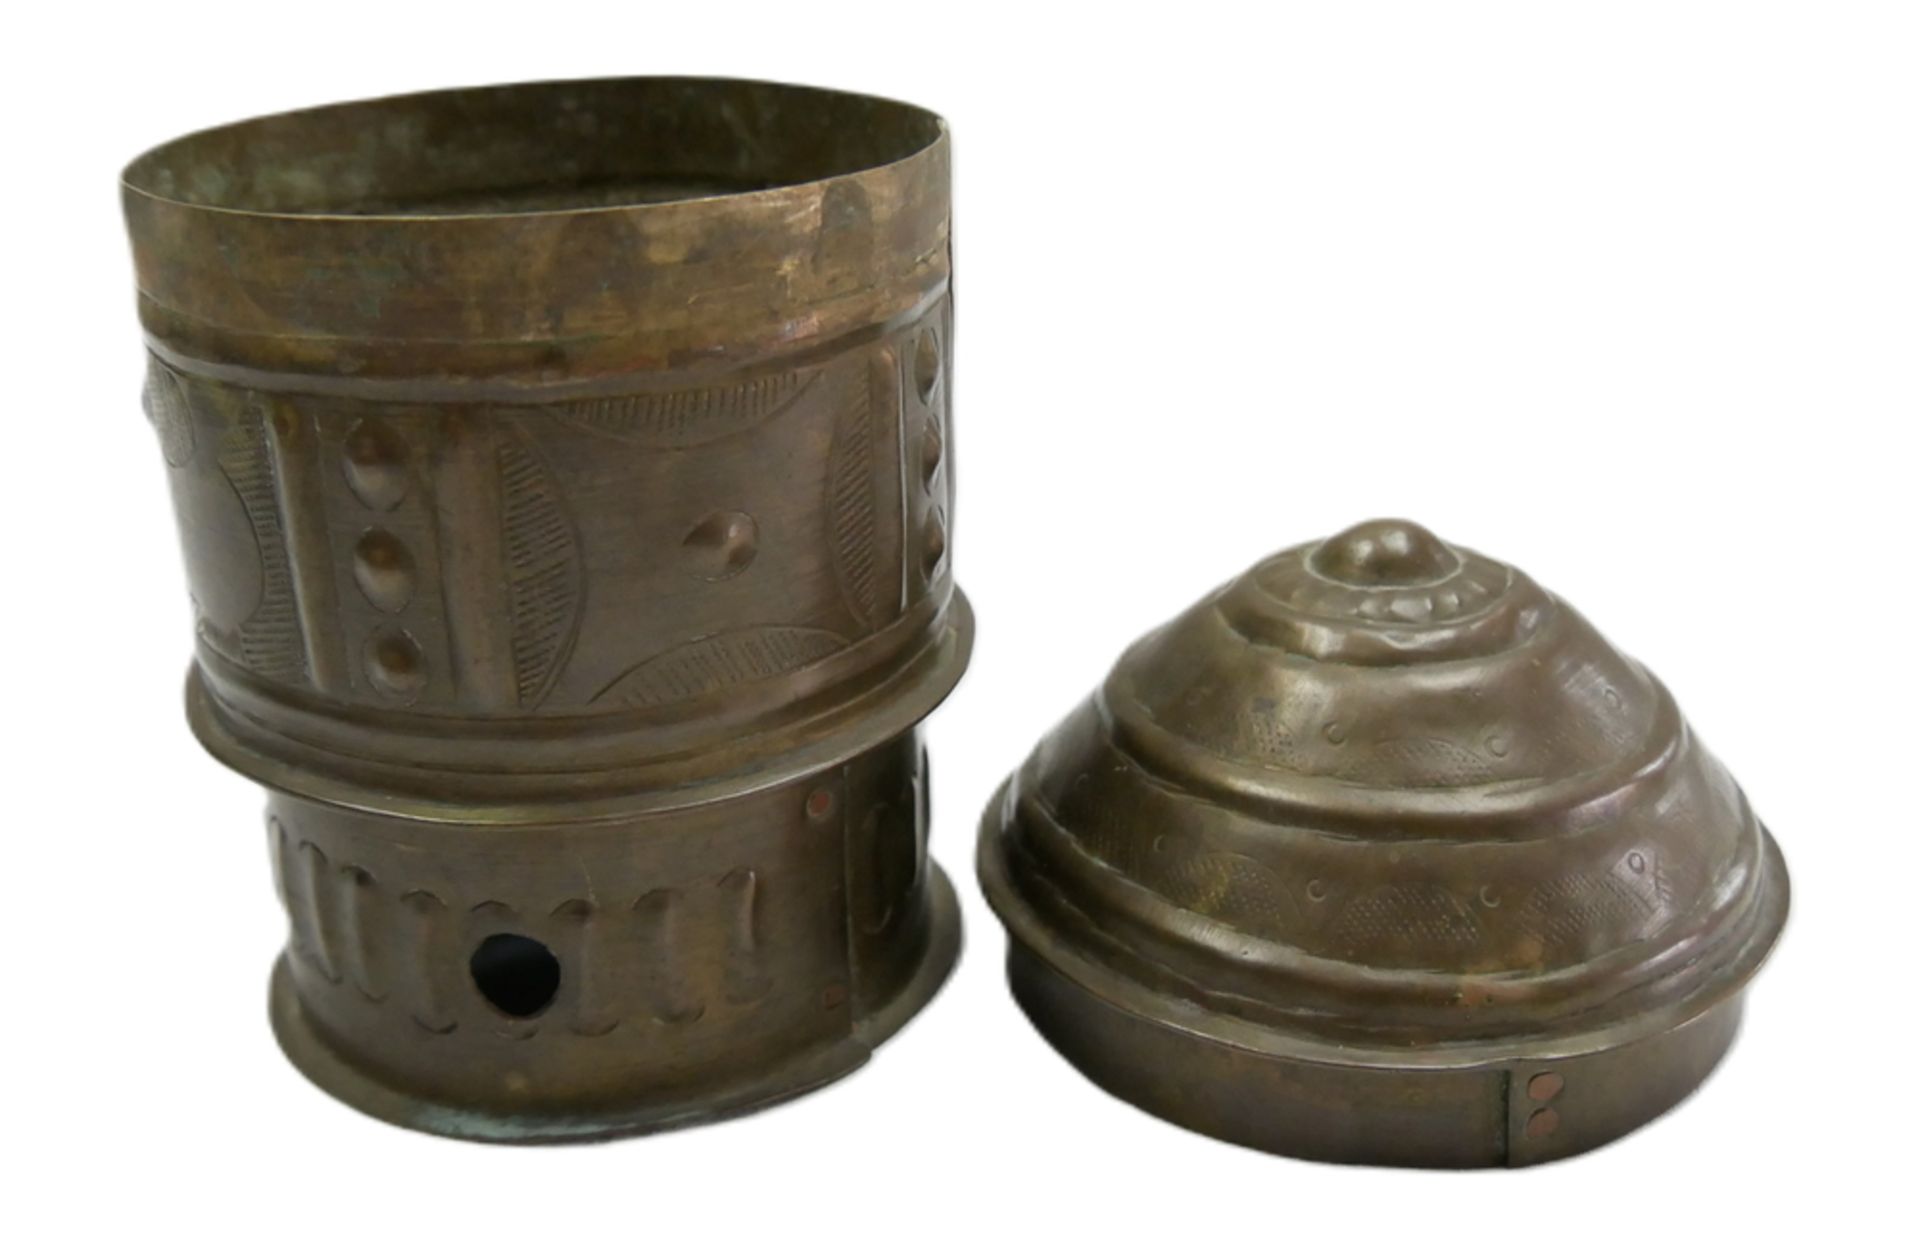 Deckelbehälter "Forowa". Forowa genannte Behälter der Asante aus Messingblech dienten zur - Bild 2 aus 2